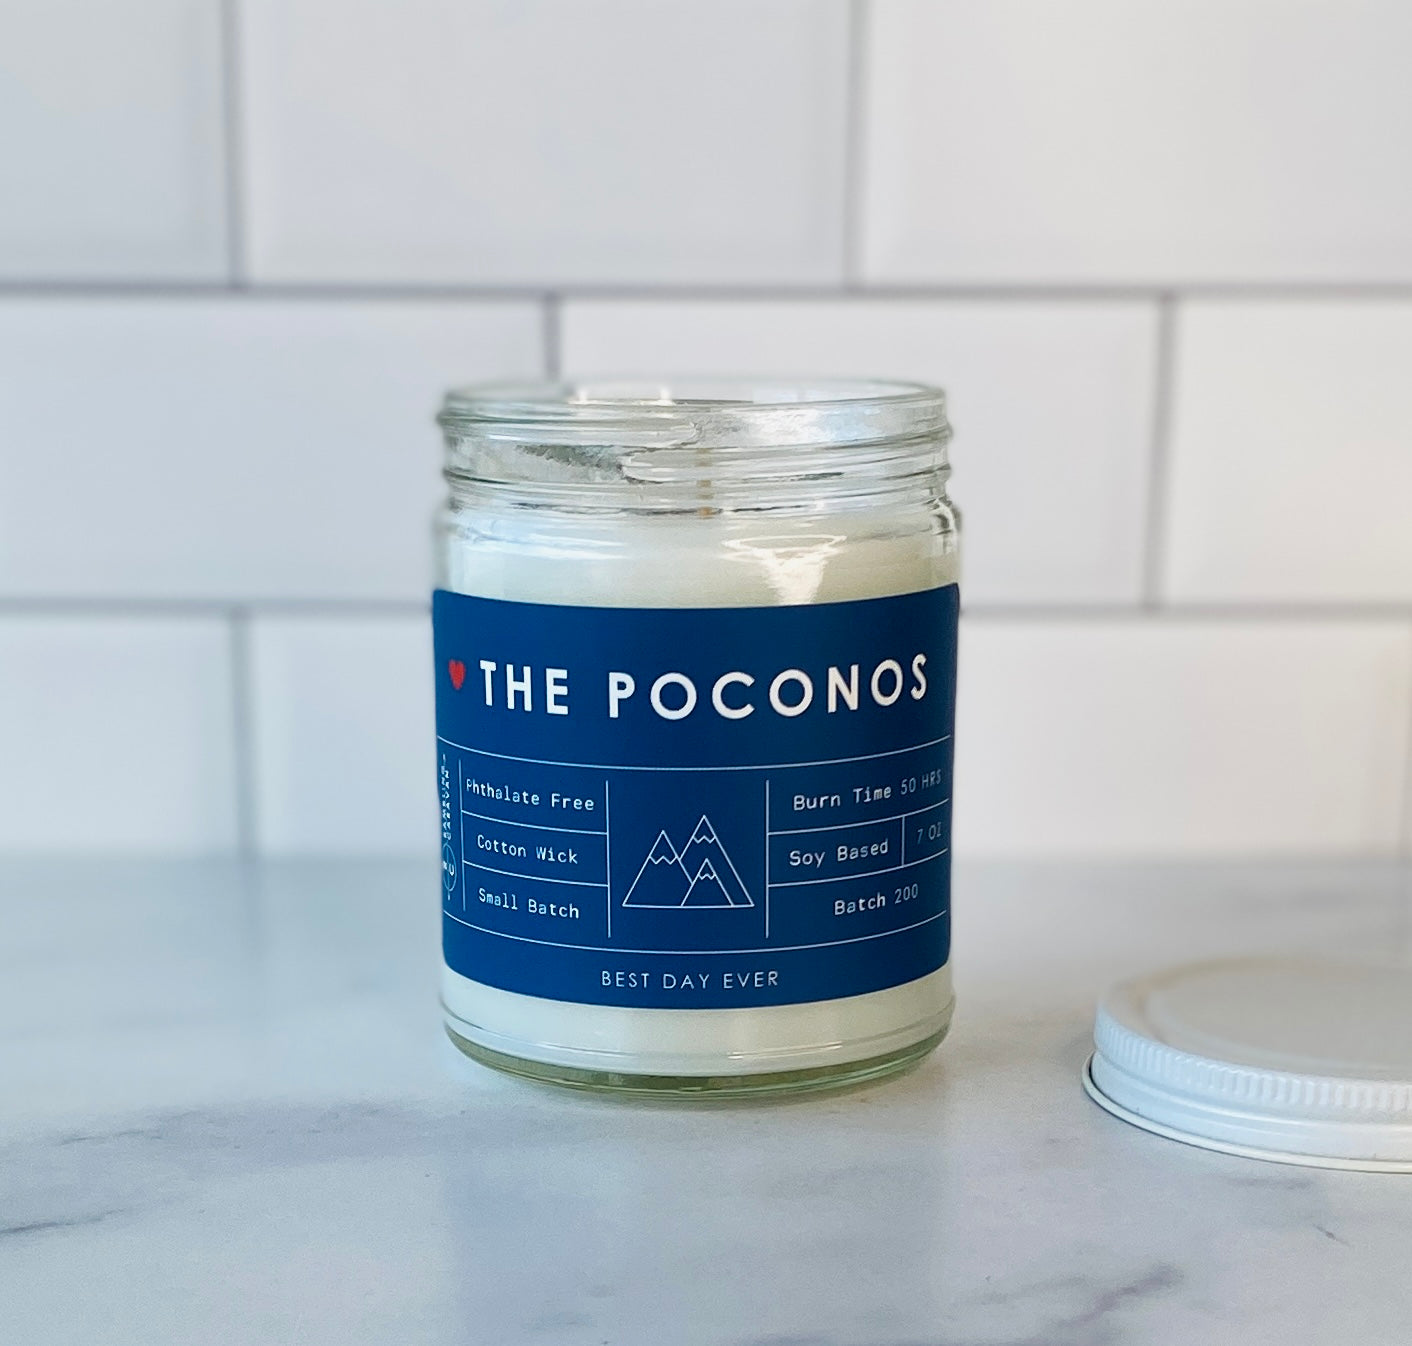 The Poconos Candle